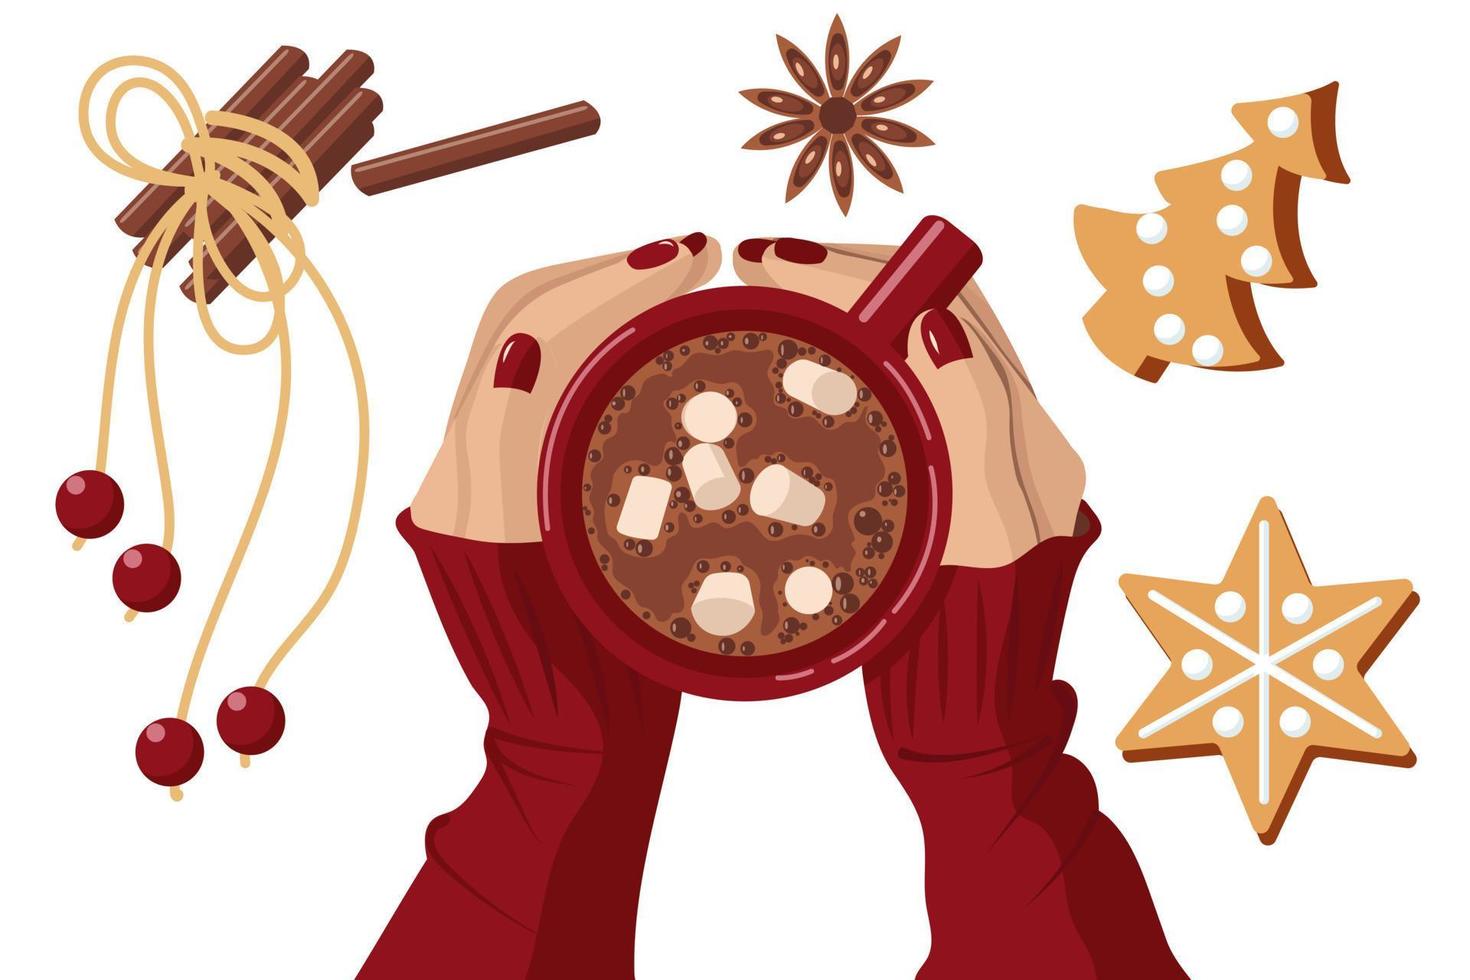 tasse rouge de cacao avec des guimauves dans les mains des femmes. à proximité se trouvent des bâtons de cannelle et une fleur, du pain d'épice en forme d'étoile et un sapin de Noël. illustration vectorielle isolée sur fond blanc. vecteur